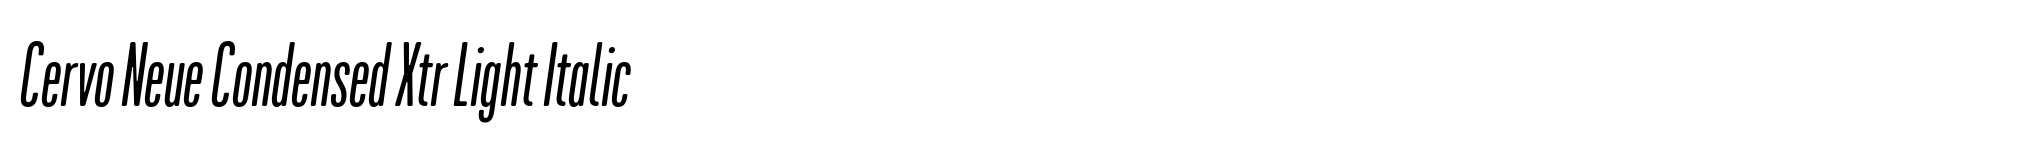 Cervo Neue Condensed Xtr Light Italic image